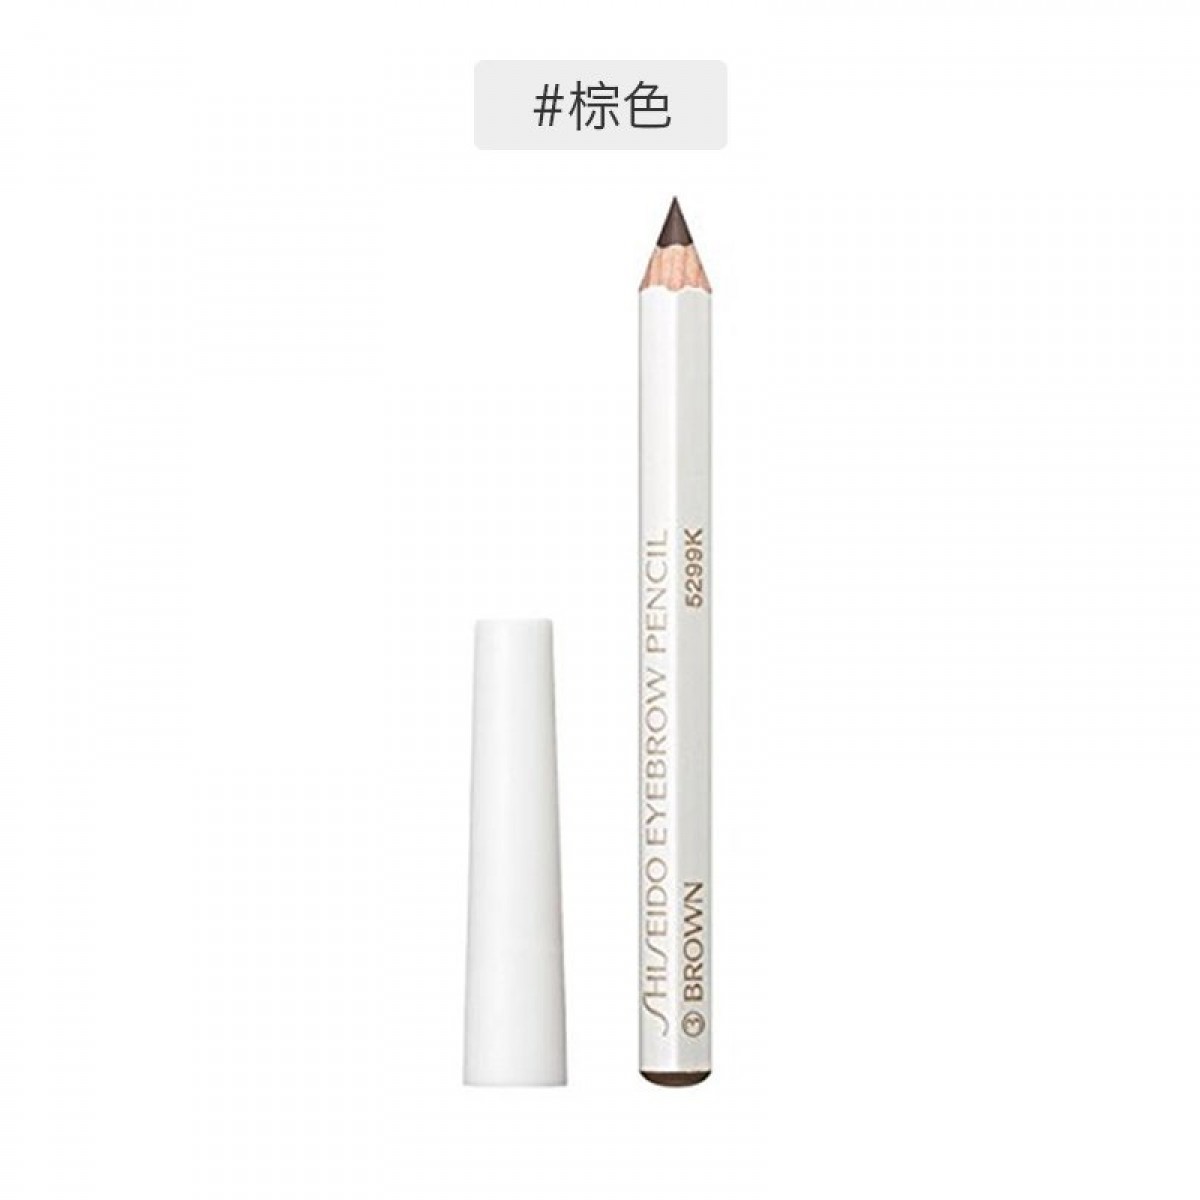 日本Shiseido资生堂 六角眉笔眉墨铅笔#03 浅棕色1.2g